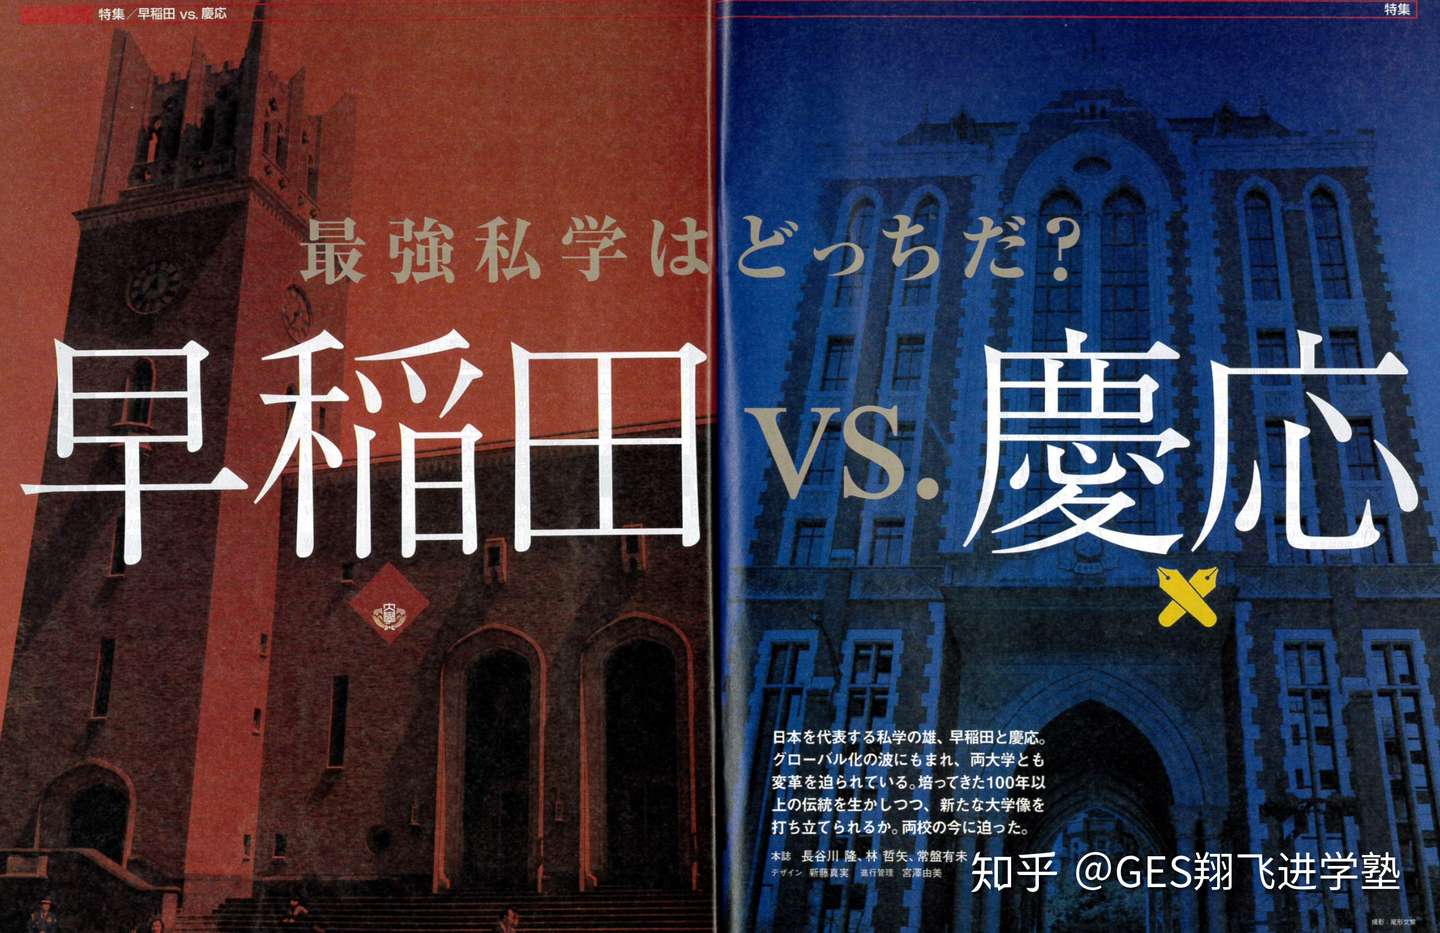 特别企划 谁才是日本最强私立大学 早稻田vs庆应 第一期 知乎